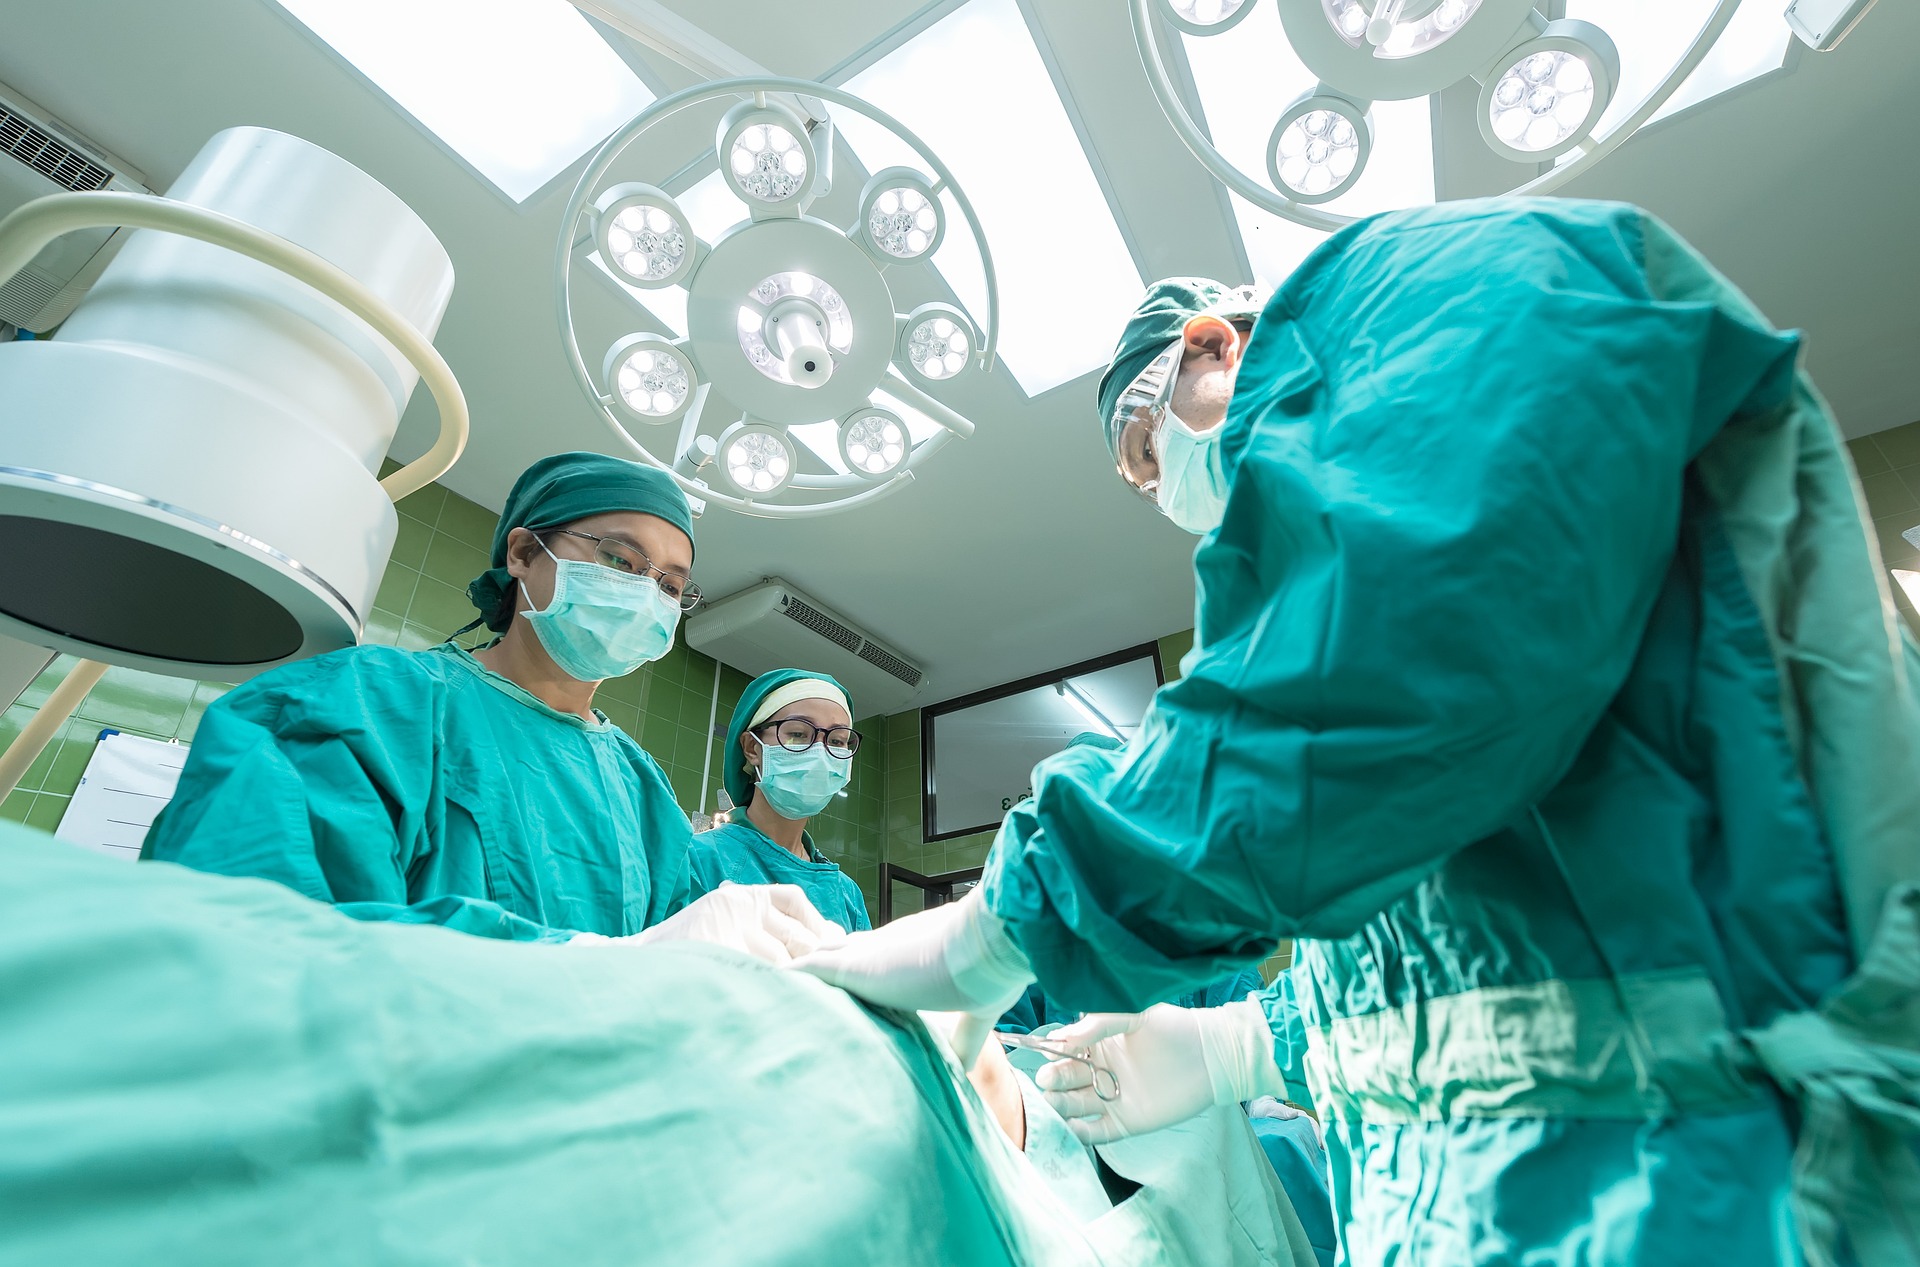 Cirugía cardíaca: Esto es lo que se sabe de la nueva forma revolucionaria y mínimamente invasiva